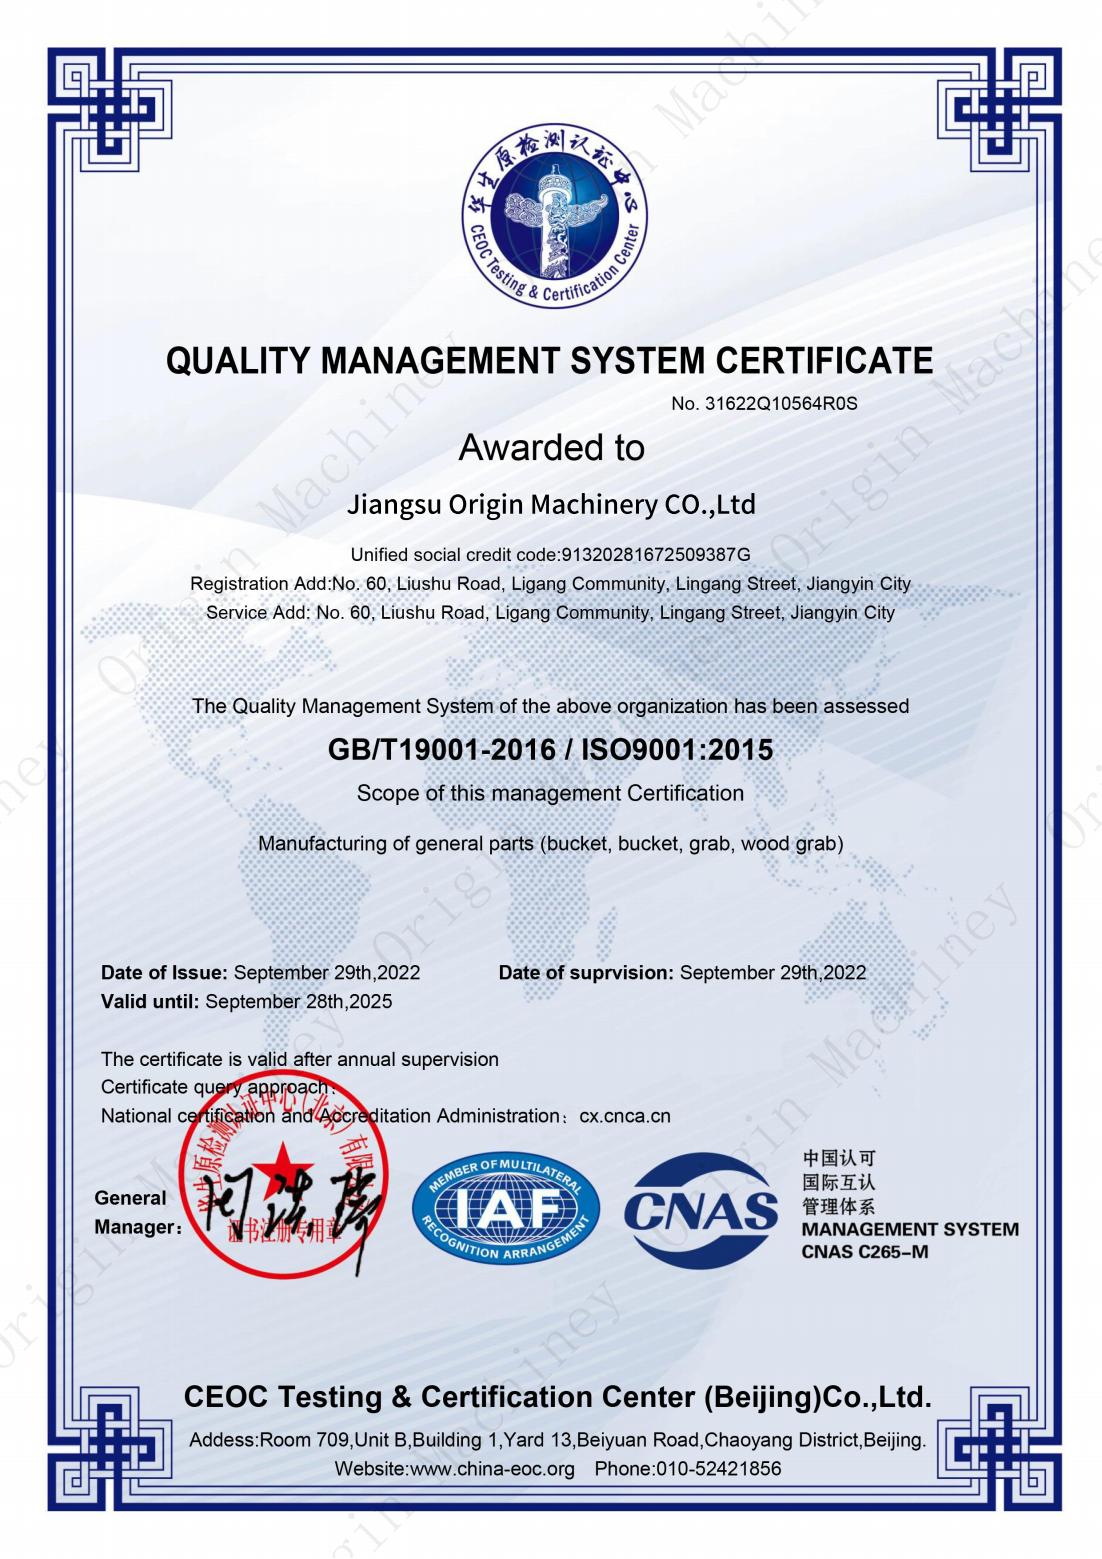 CNAS-Certificat del Sistema de Gestió de la Qualitat - Origen Maquinària(1)_00